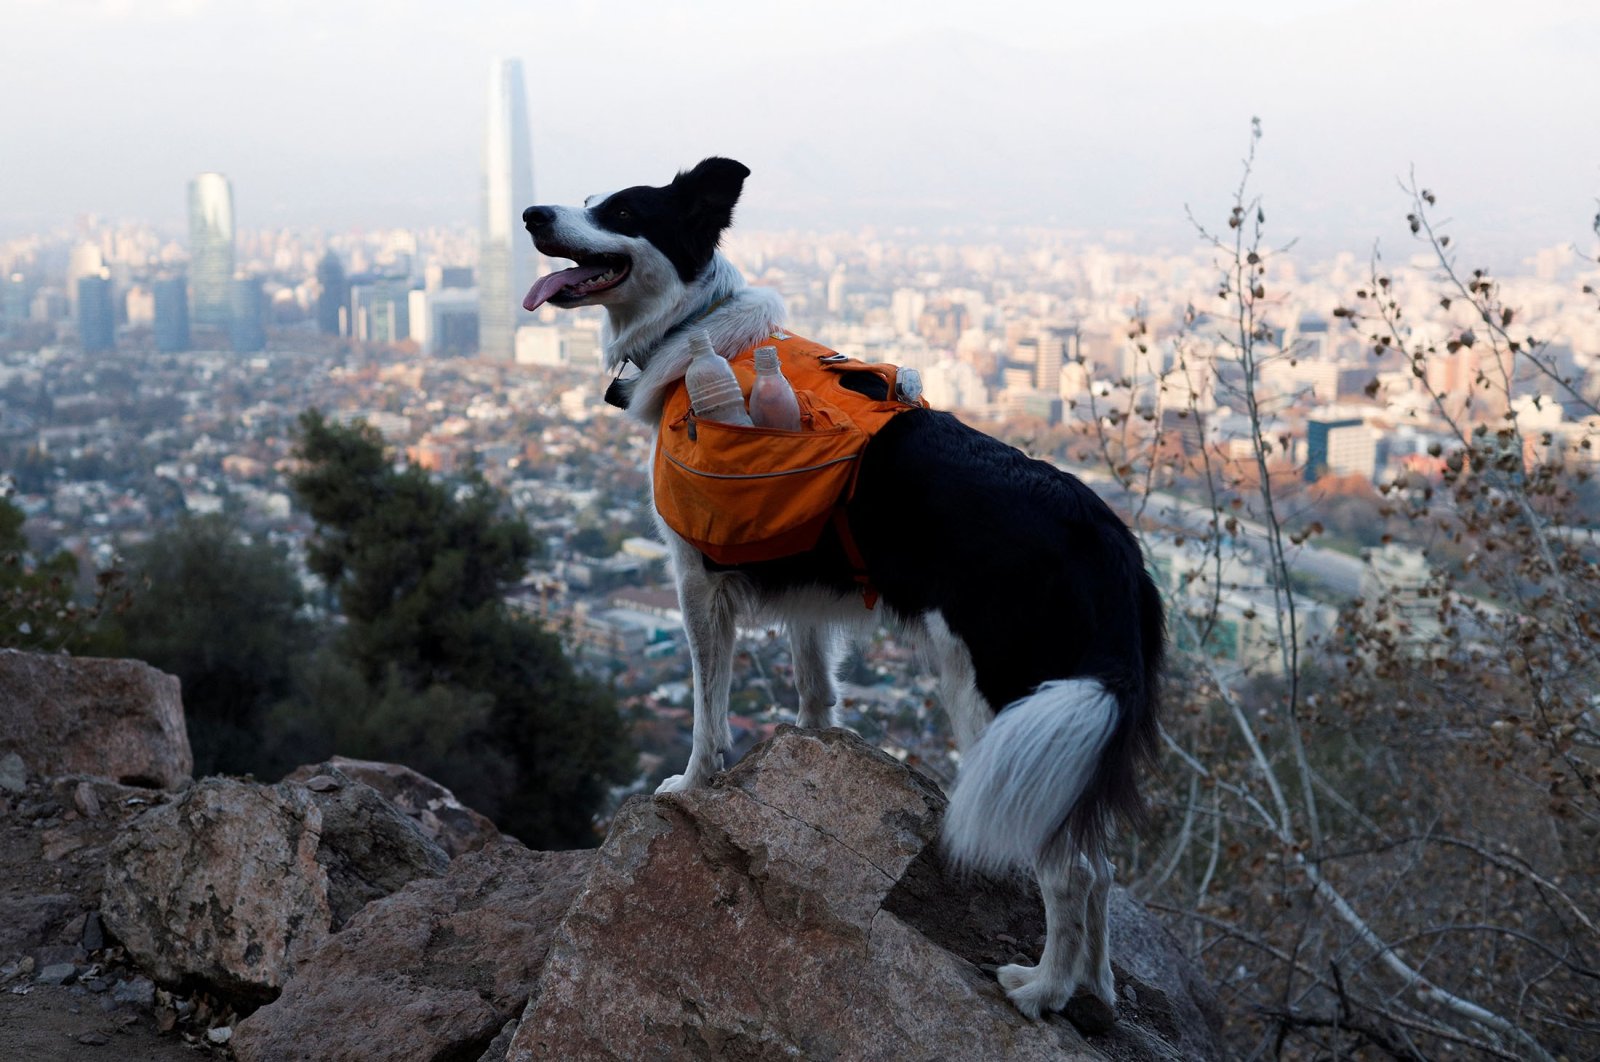 Anjing superhero Chili berjuang untuk alam dengan membersihkan kekuatan super